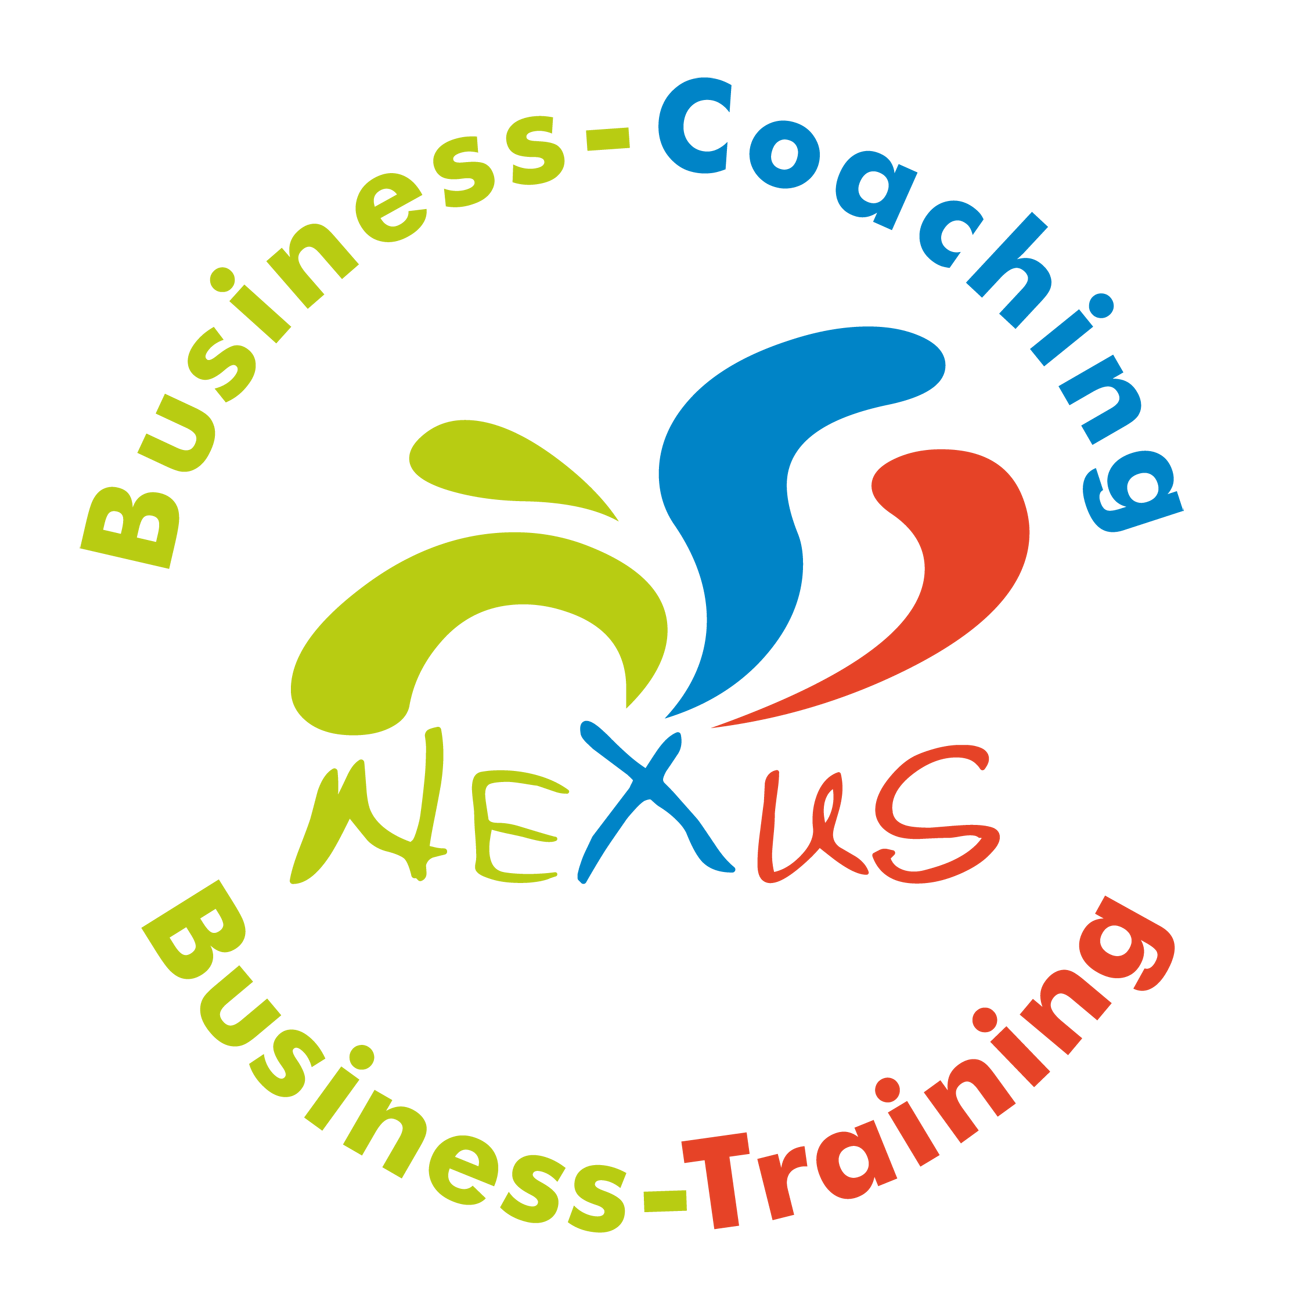 Business-Coaching Freudenstadt, Business-Einzelcoaching, Business-Training, Führungskräfte-Coaching Freudenstadt, Führungskräfte-Training, Kommunikationstraining, Persönlichkeitstraining